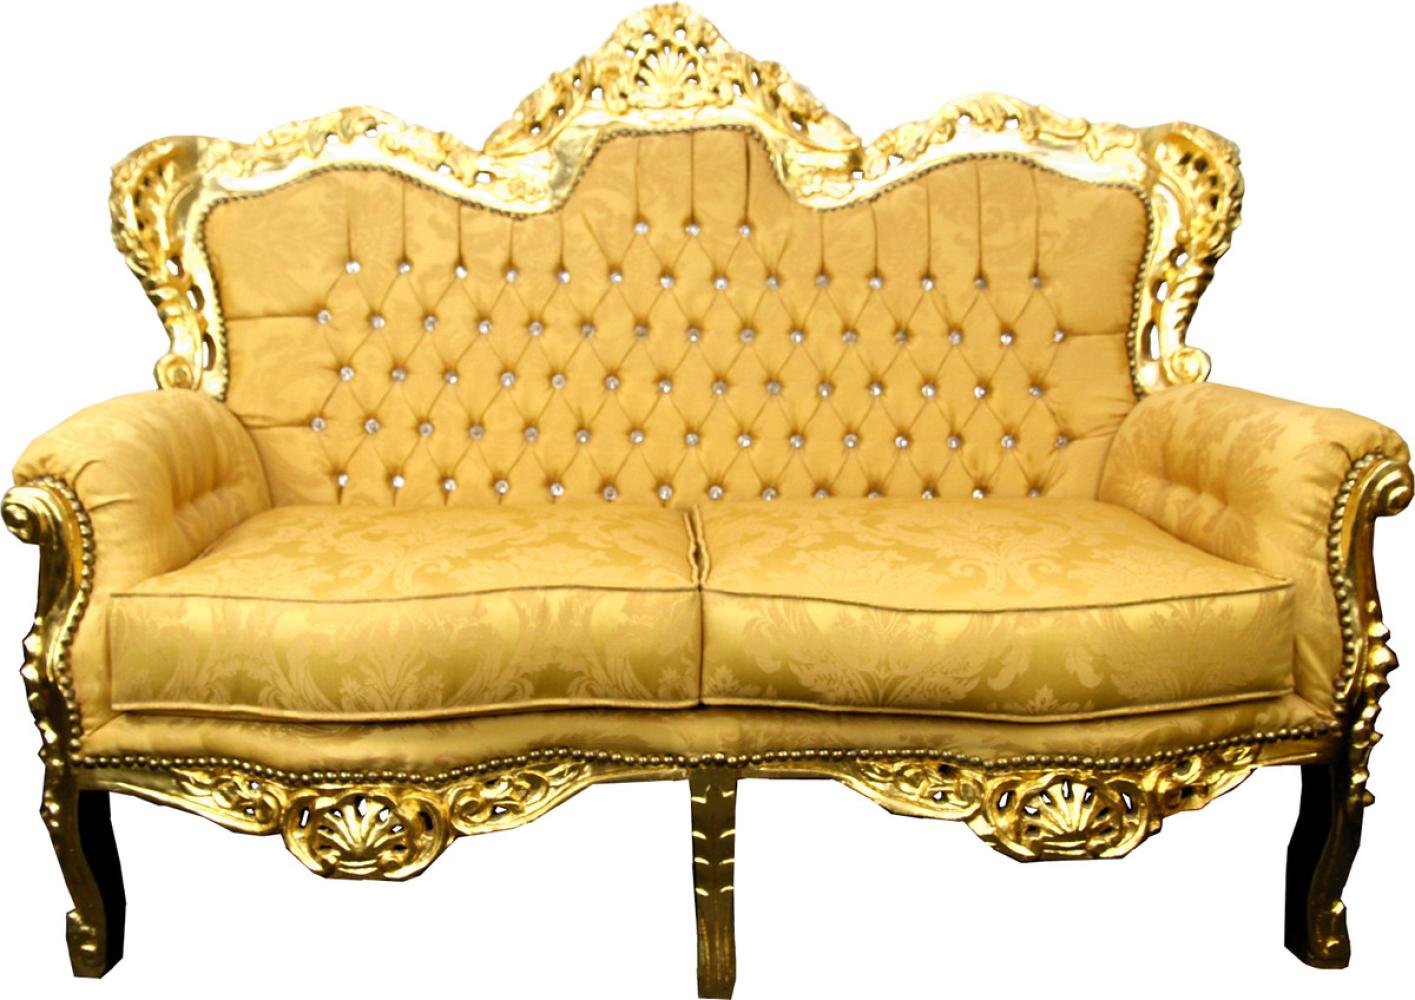 Casa Padrino Barock 2er Sofa Gold Muster / Gold mit Bling Bling Glitzersteinen - Antik Stil Wohnzimmer Möbel Bild 1